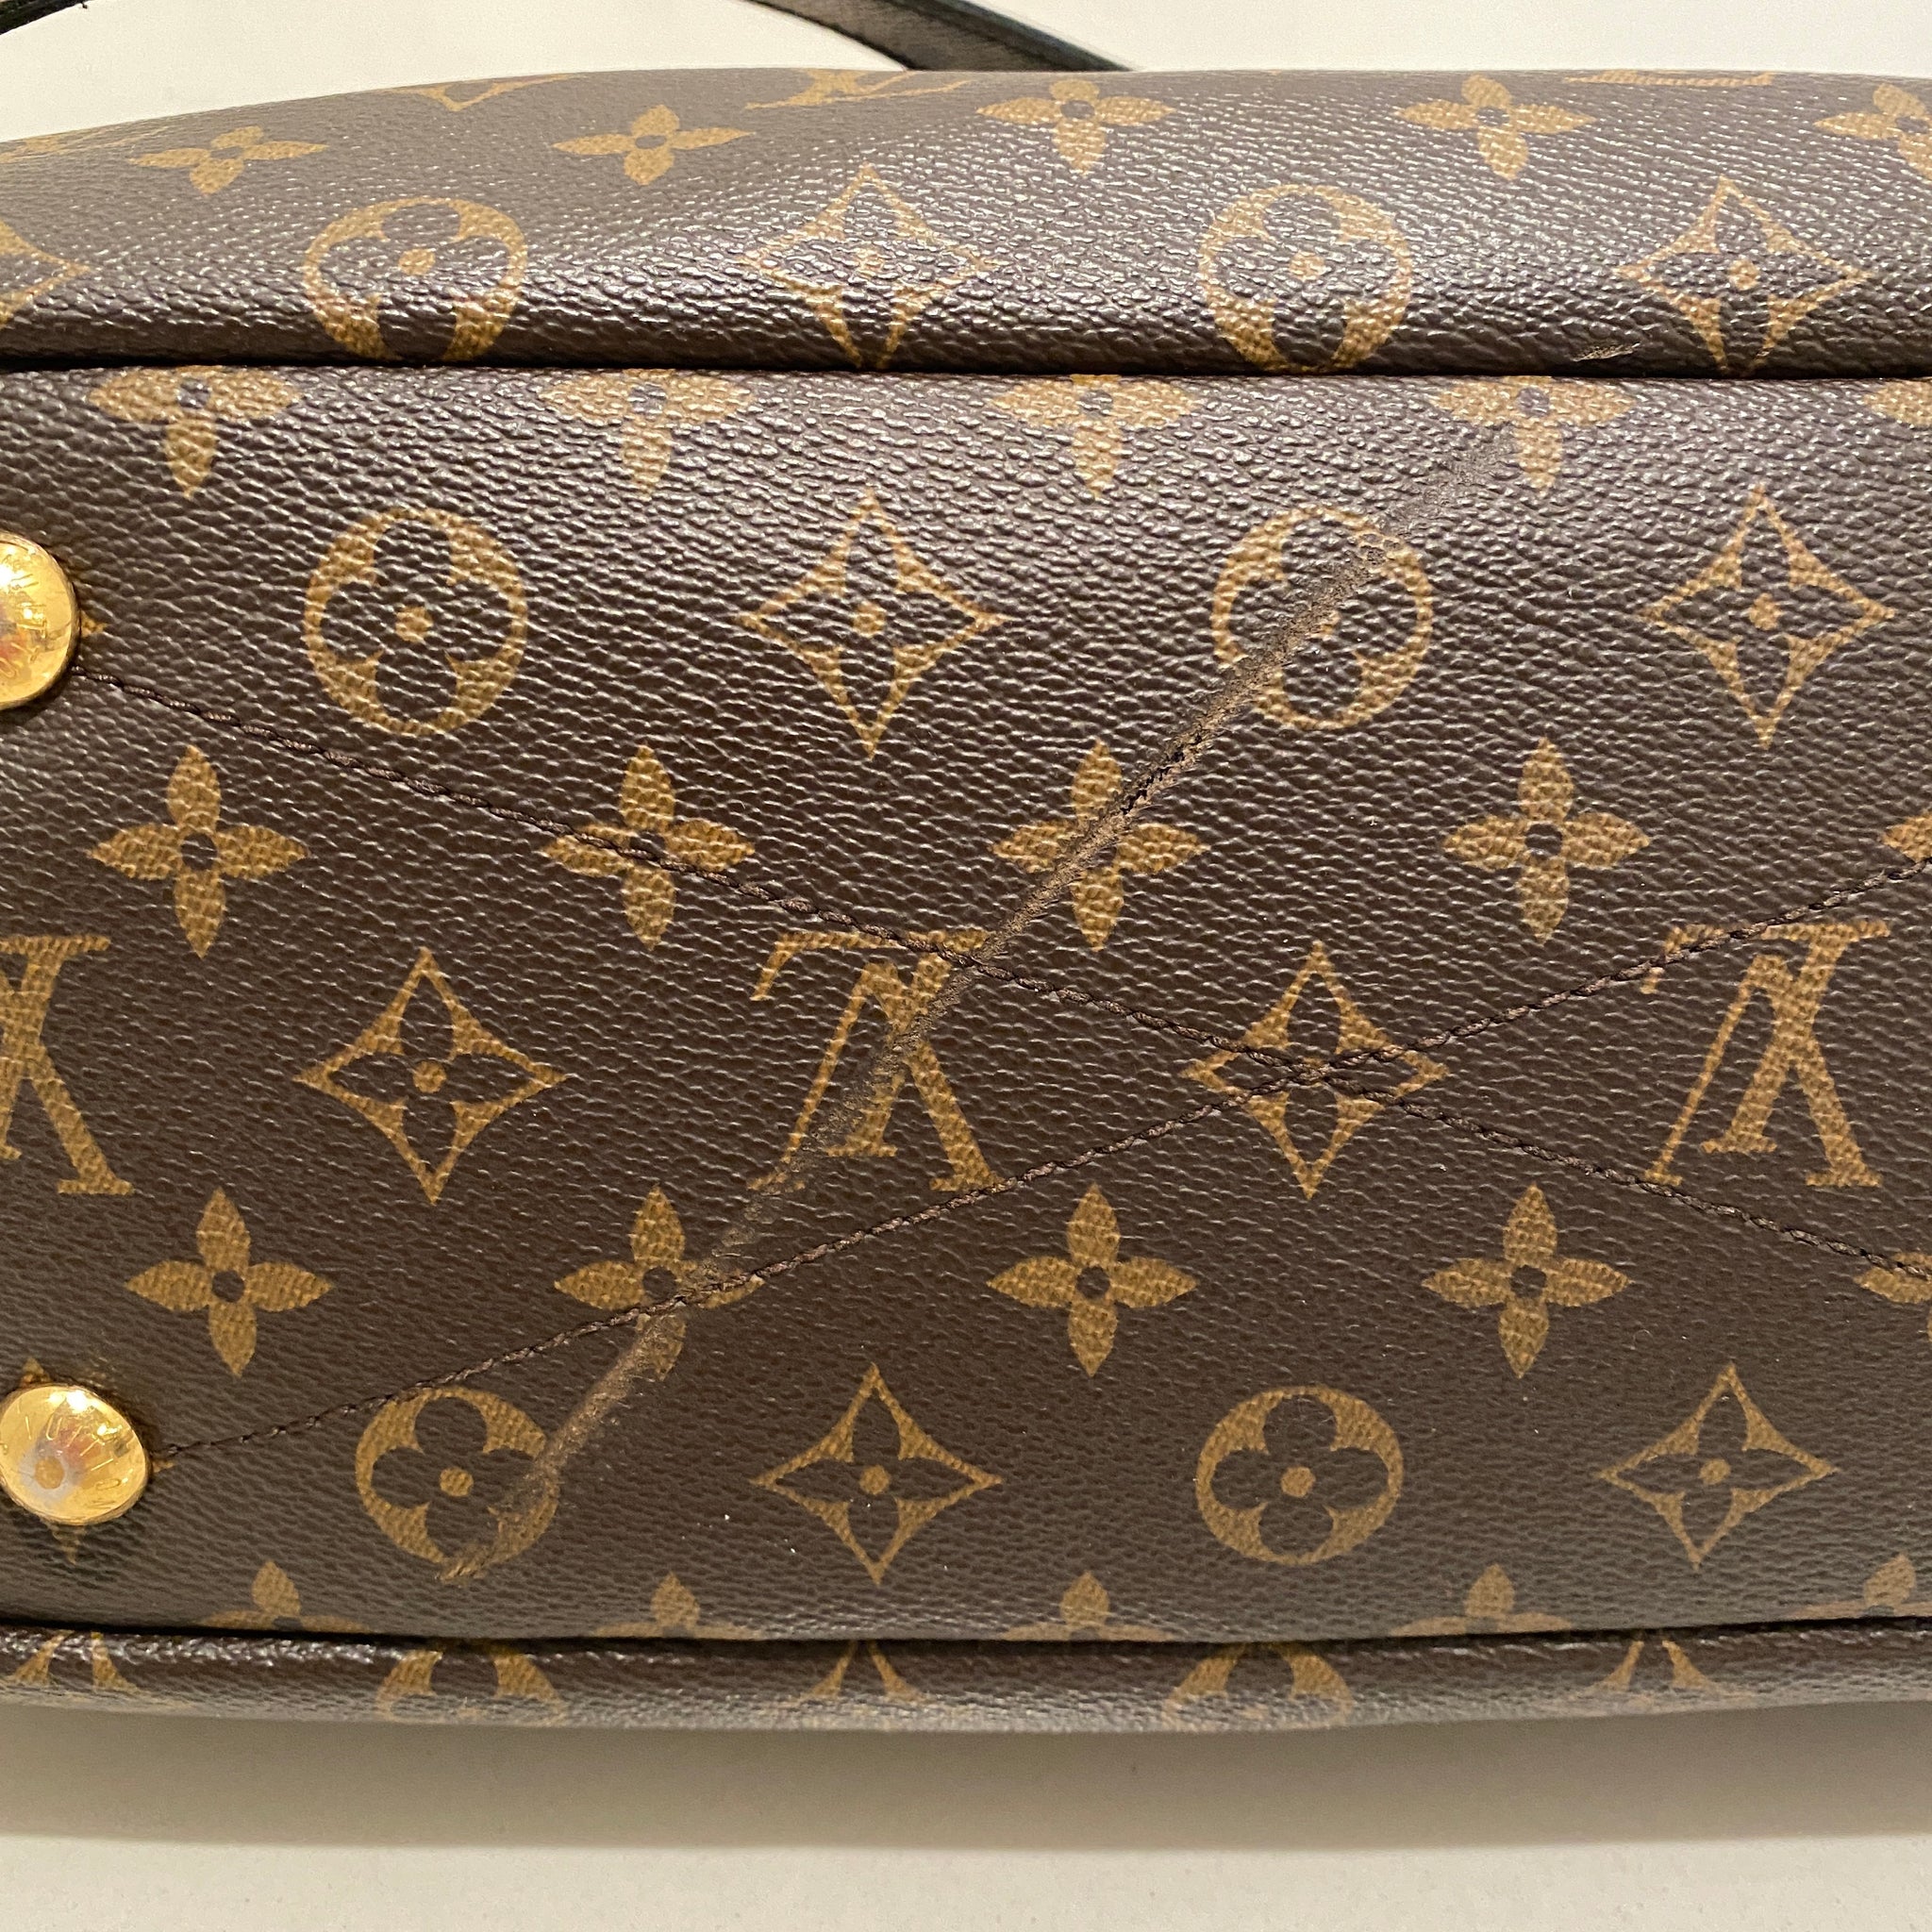 Louis Vuitton Pallas MM Monogram – Luxi Bags